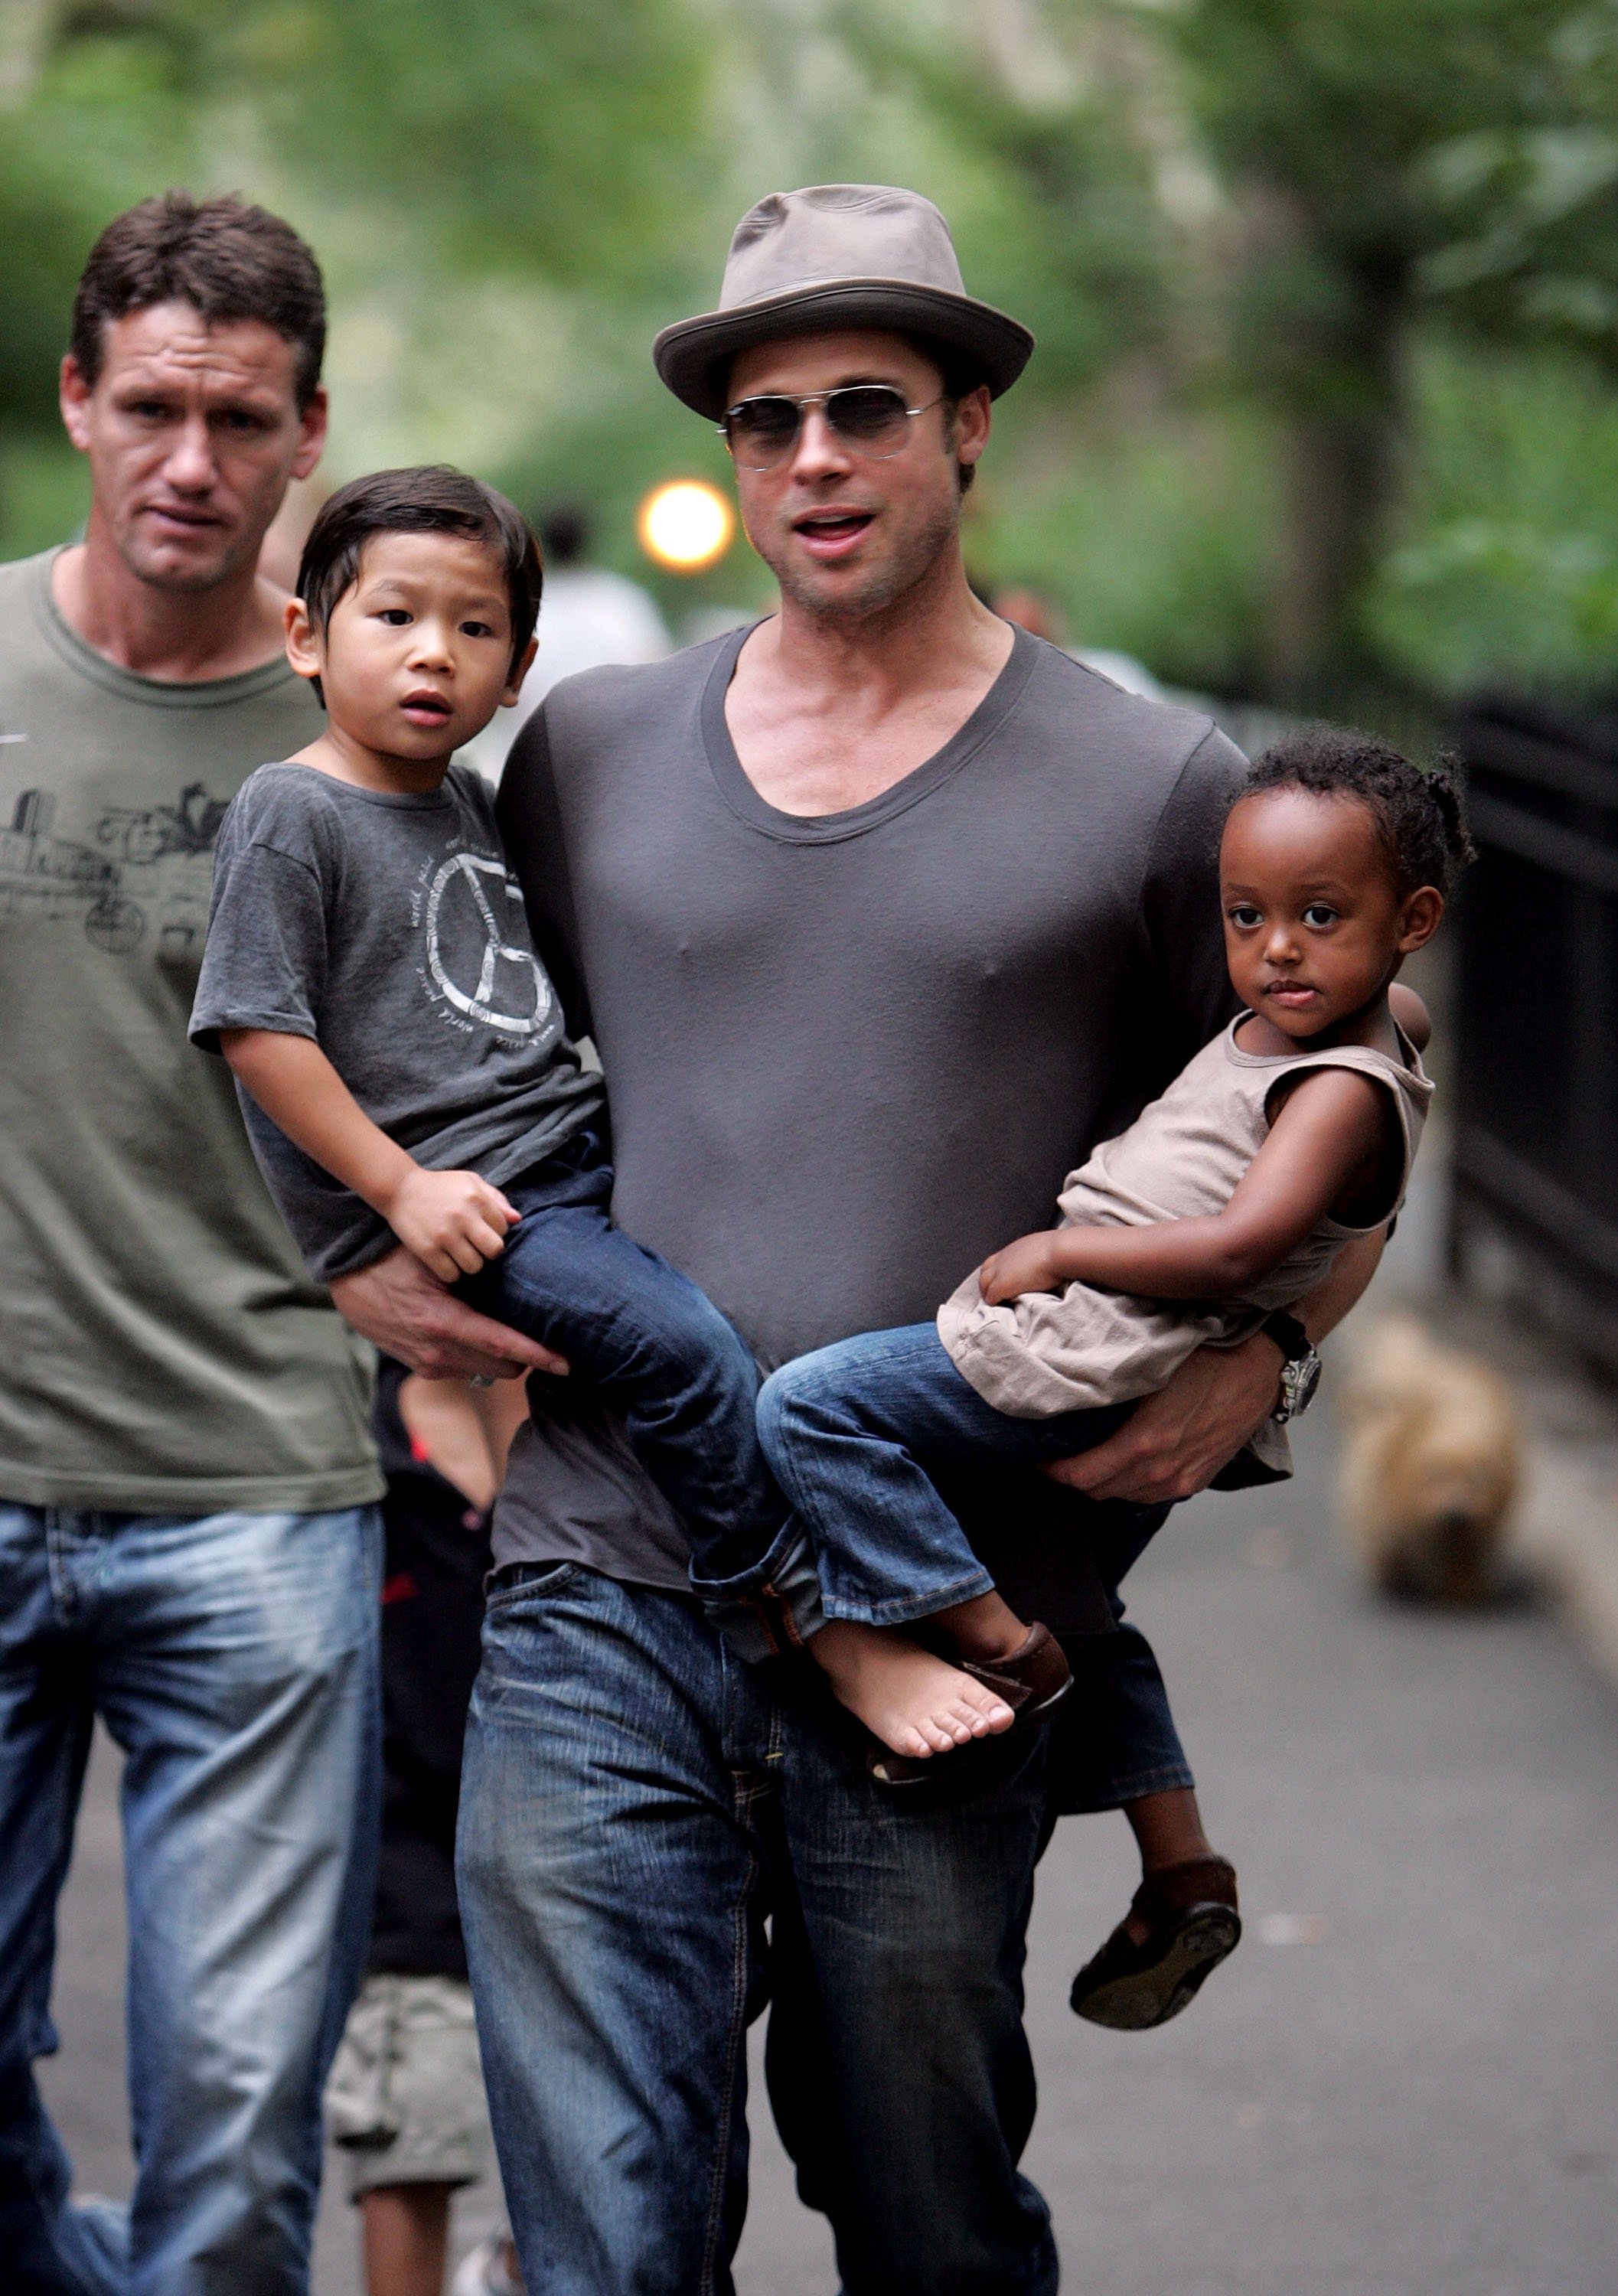 Brad Pitt visitando un patio de recreo con sus hijos Zahara Jolie-Pitt, Pax Jolie-Pitt y Maddox Jolie-Pitt en Nueva York, el 26 de agosto de 2007. | Foto: Getty Images